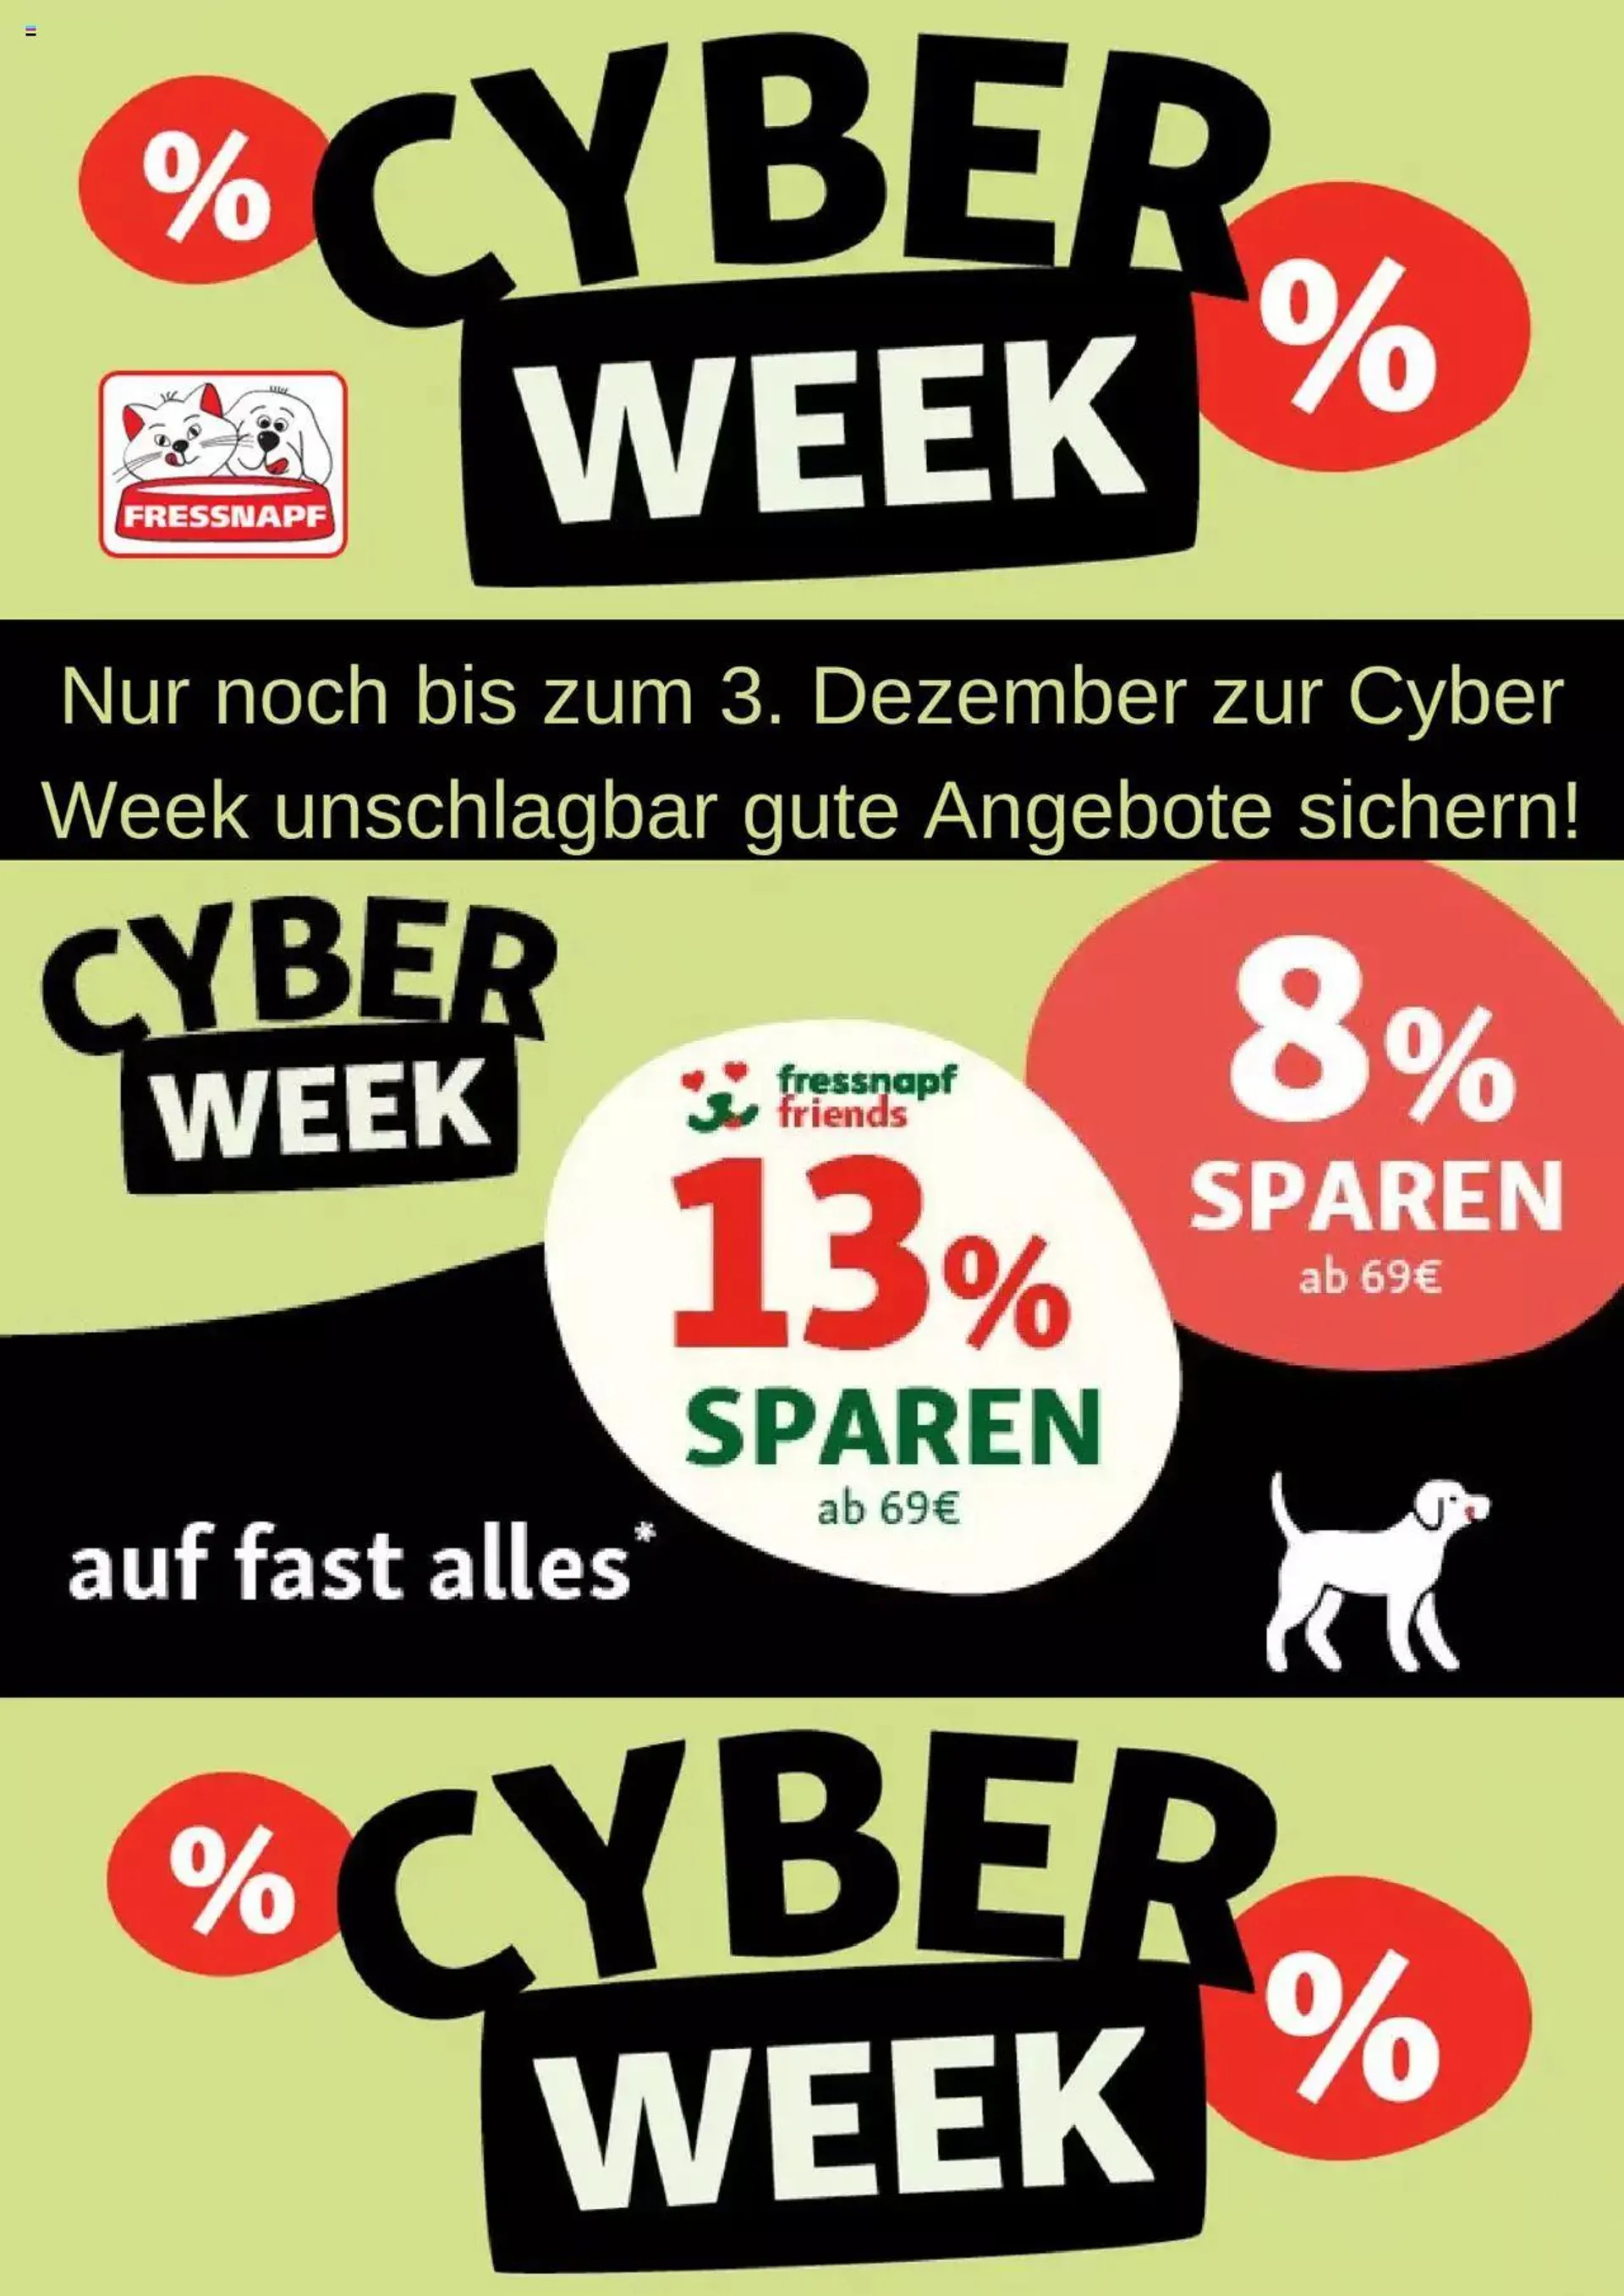 Fressnapf - Cyber Week - 0